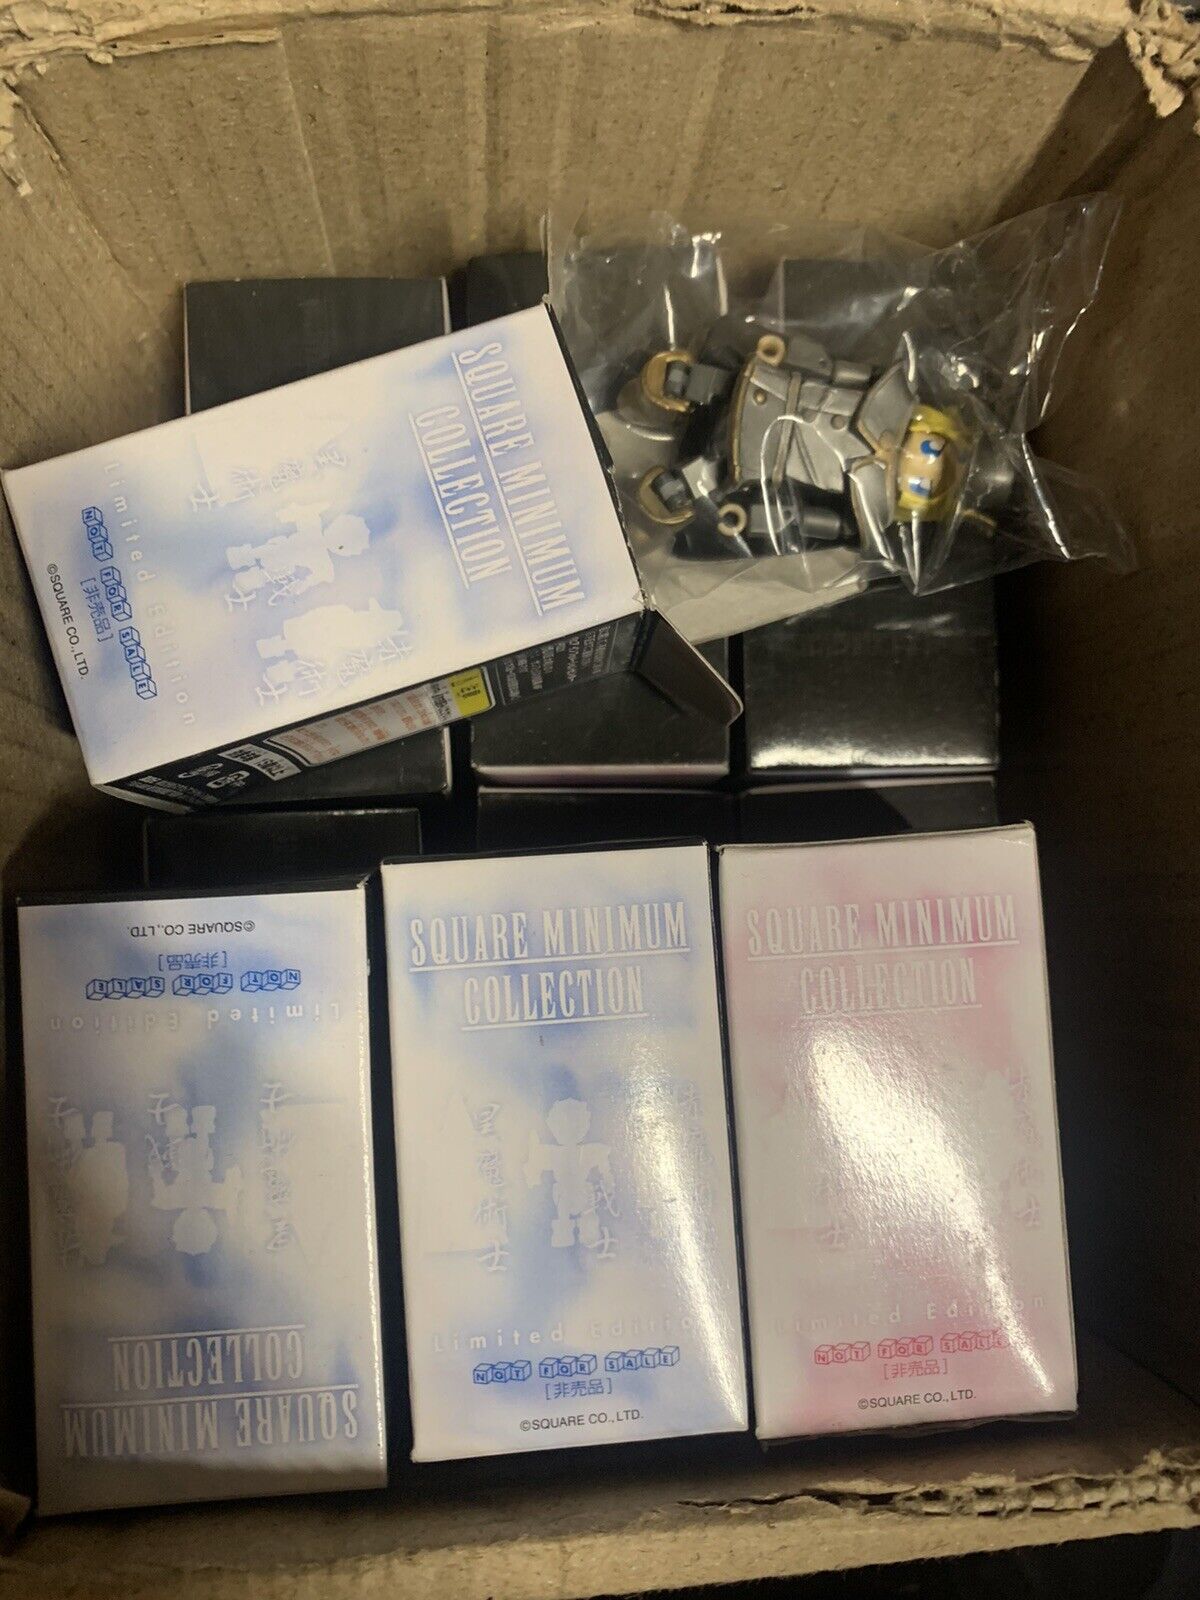 Final Fantasy figure set Square Enix Minimum Collection Limited Edition